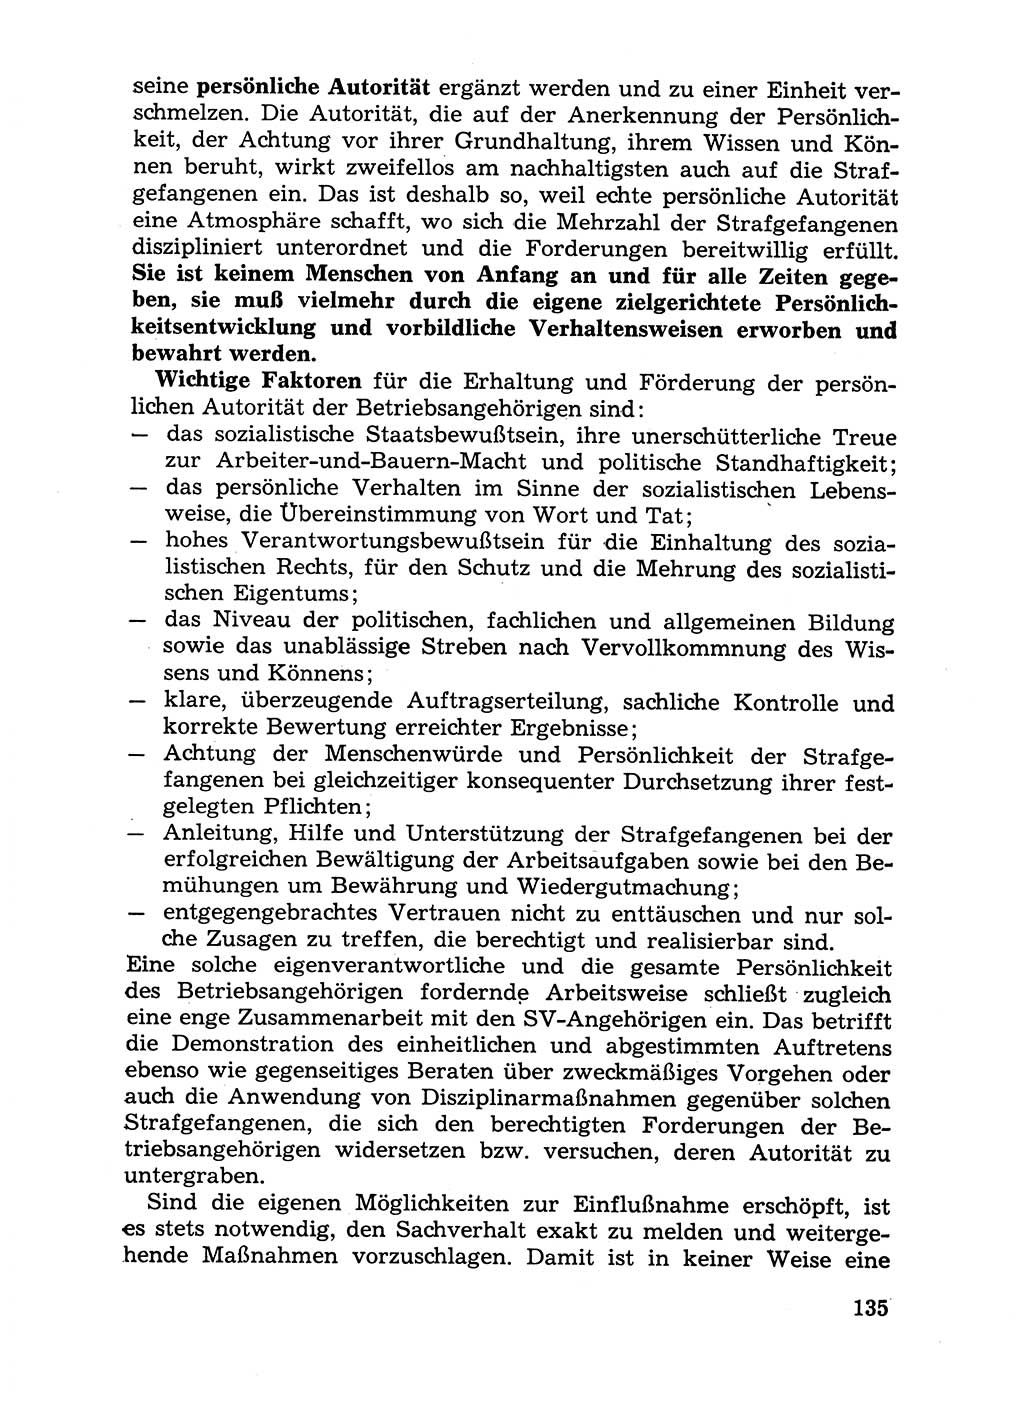 Handbuch für Betriebsangehörige, Abteilung Strafvollzug (SV) [Ministerium des Innern (MdI) Deutsche Demokratische Republik (DDR)] 1981, Seite 135 (Hb. BA Abt. SV MdI DDR 1981, S. 135)